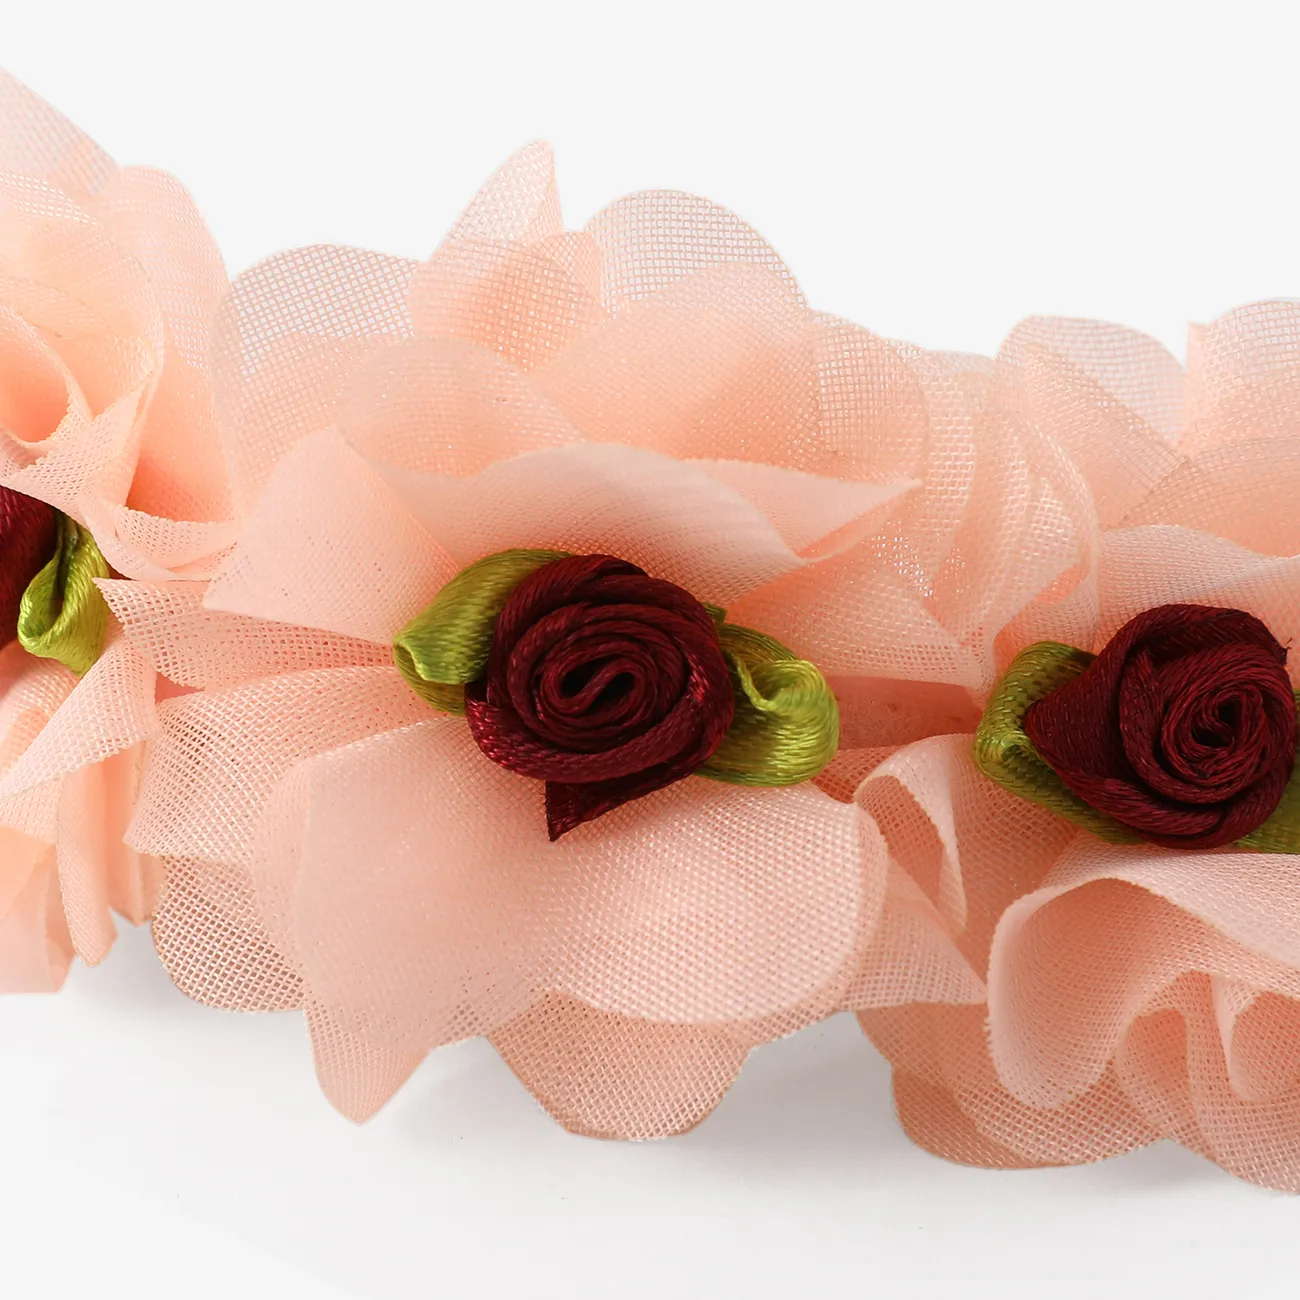 Diadema accesoria para el cabello de flor de rosa dulce para bebés / niños pequeños Coral big image 1